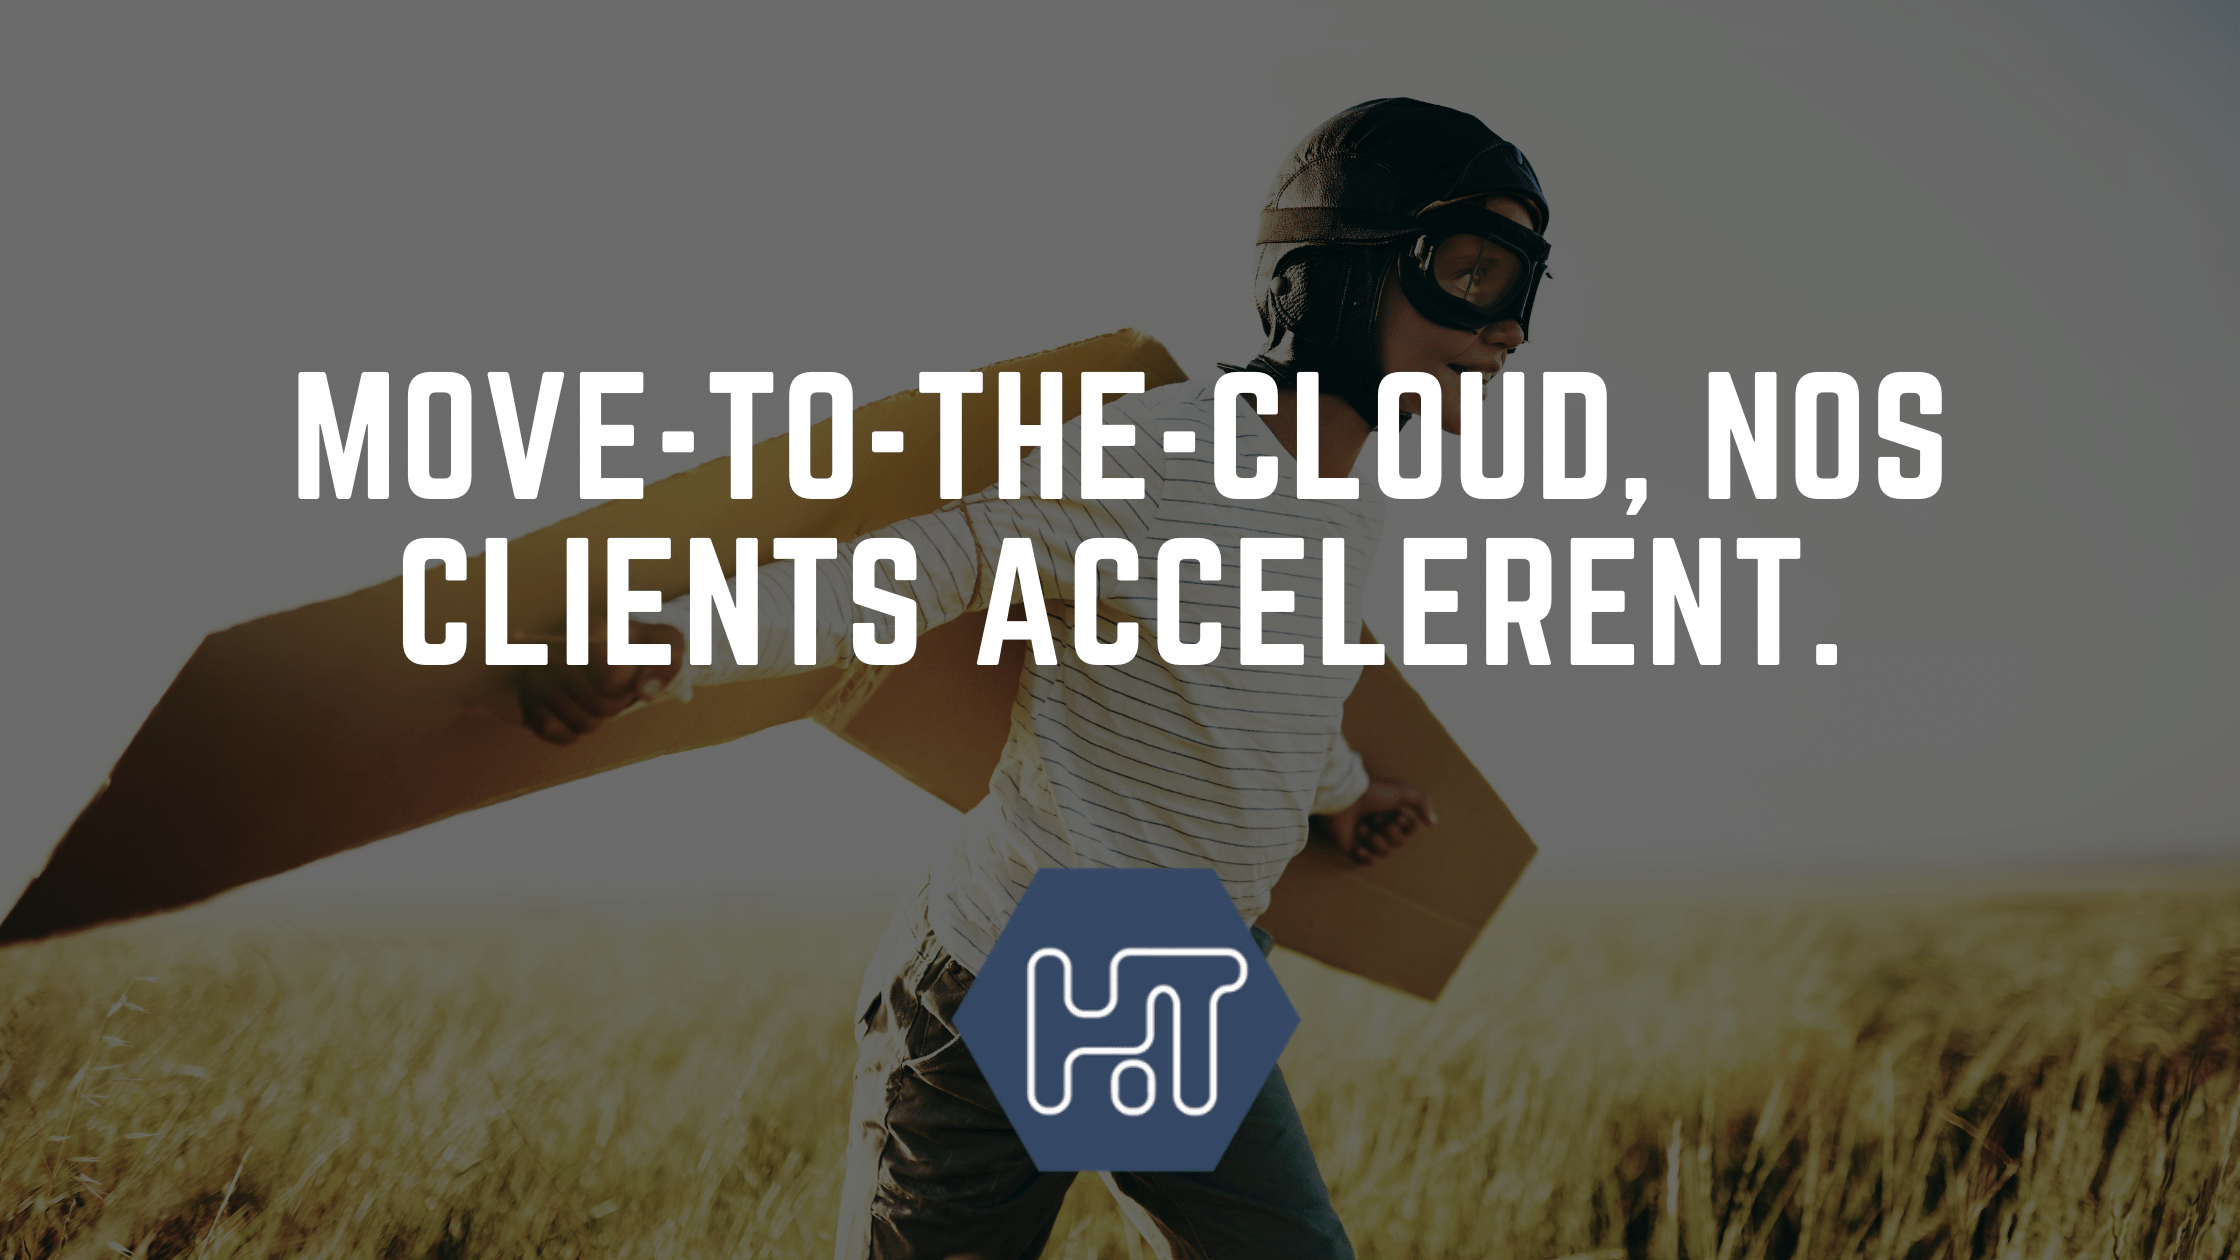 Move-to-the-cloud, une tendance de fond qui s’accélère en 2022 chez nos clients. Les raisons en 4 points.